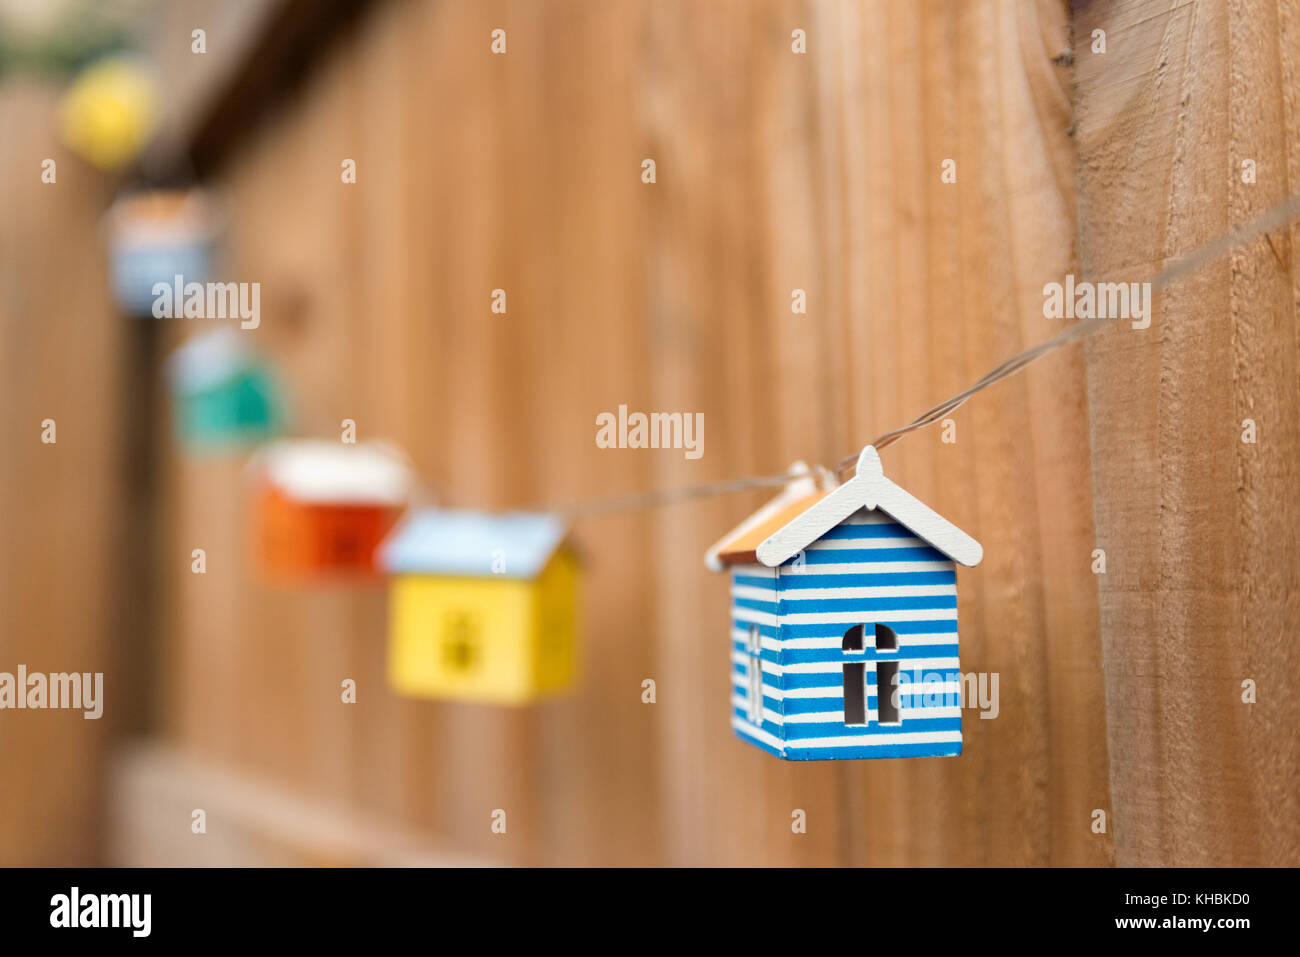 Coloridas casas modelo diminuto vinculado a una cuerda colgando de una valla. Foto de stock